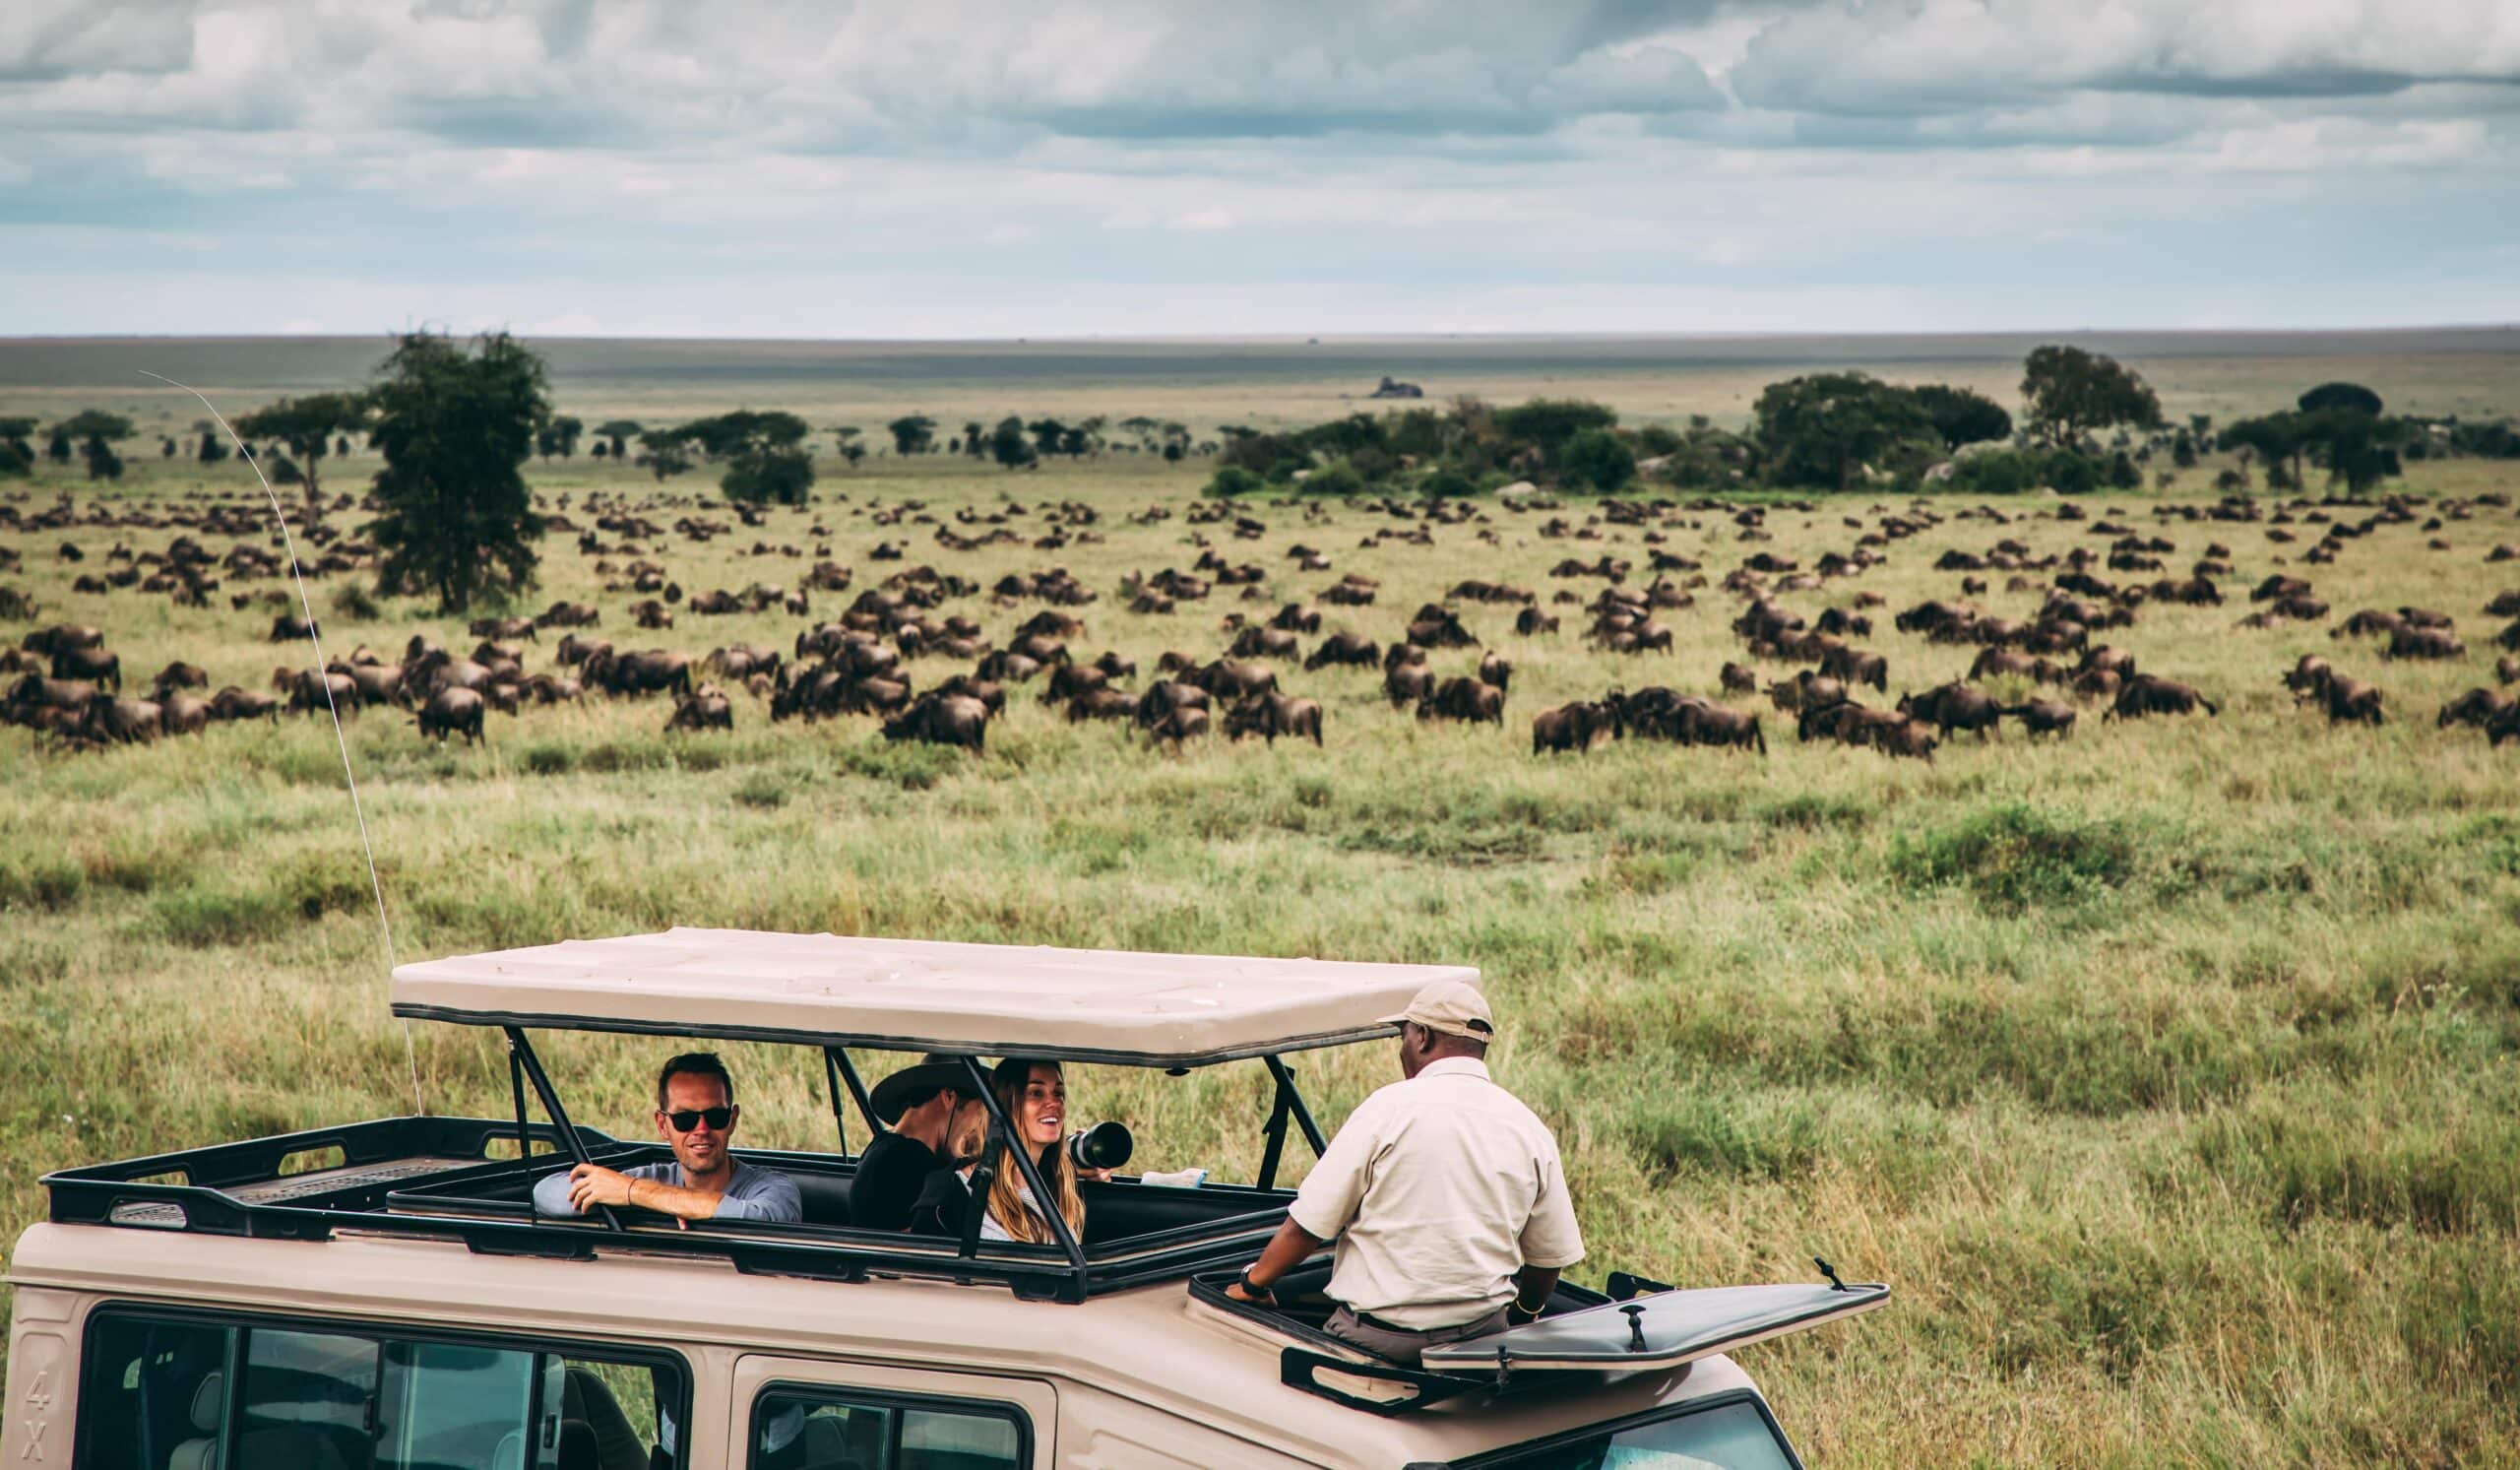 坦桑尼亚 - 坦桑尼亚旅行的最佳时间 min scaled - tanzania safari